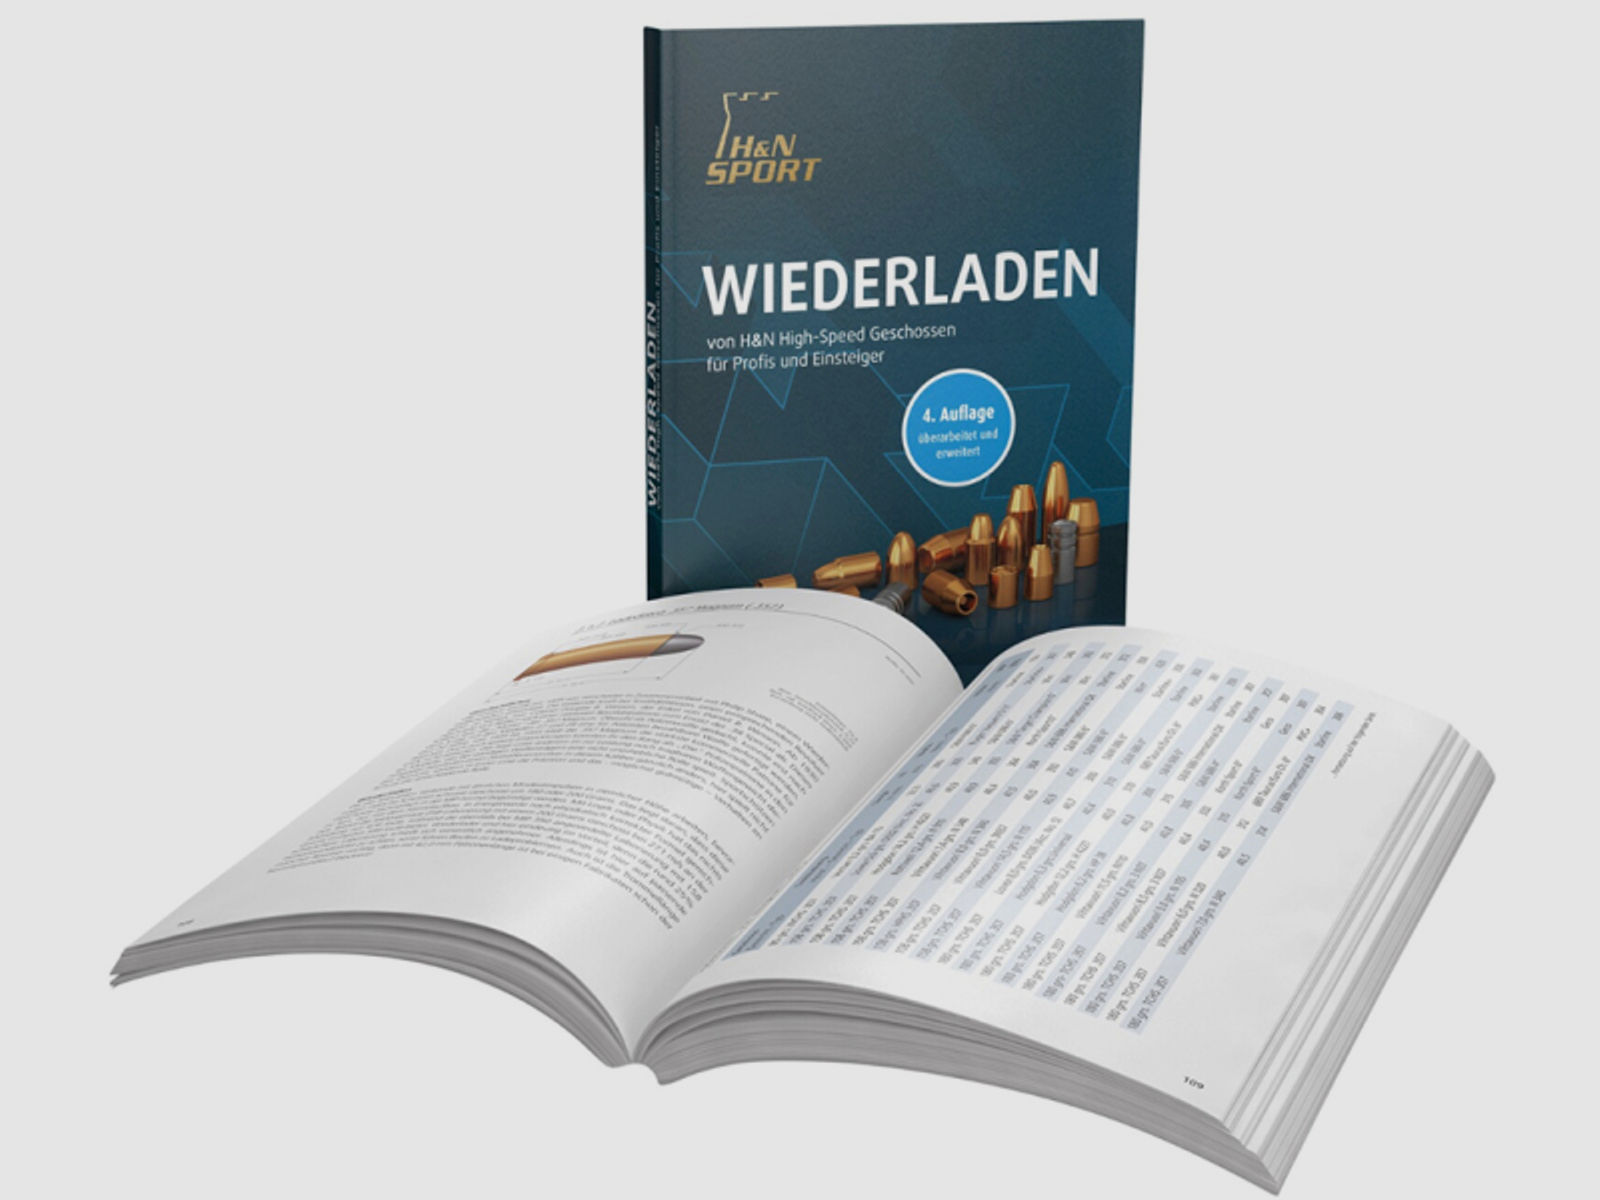 H&N Wiederladebuch für Profis & Einsteiger | Ladedatenbuch 4. Auflage | Haendler&Natermann NEU OVP